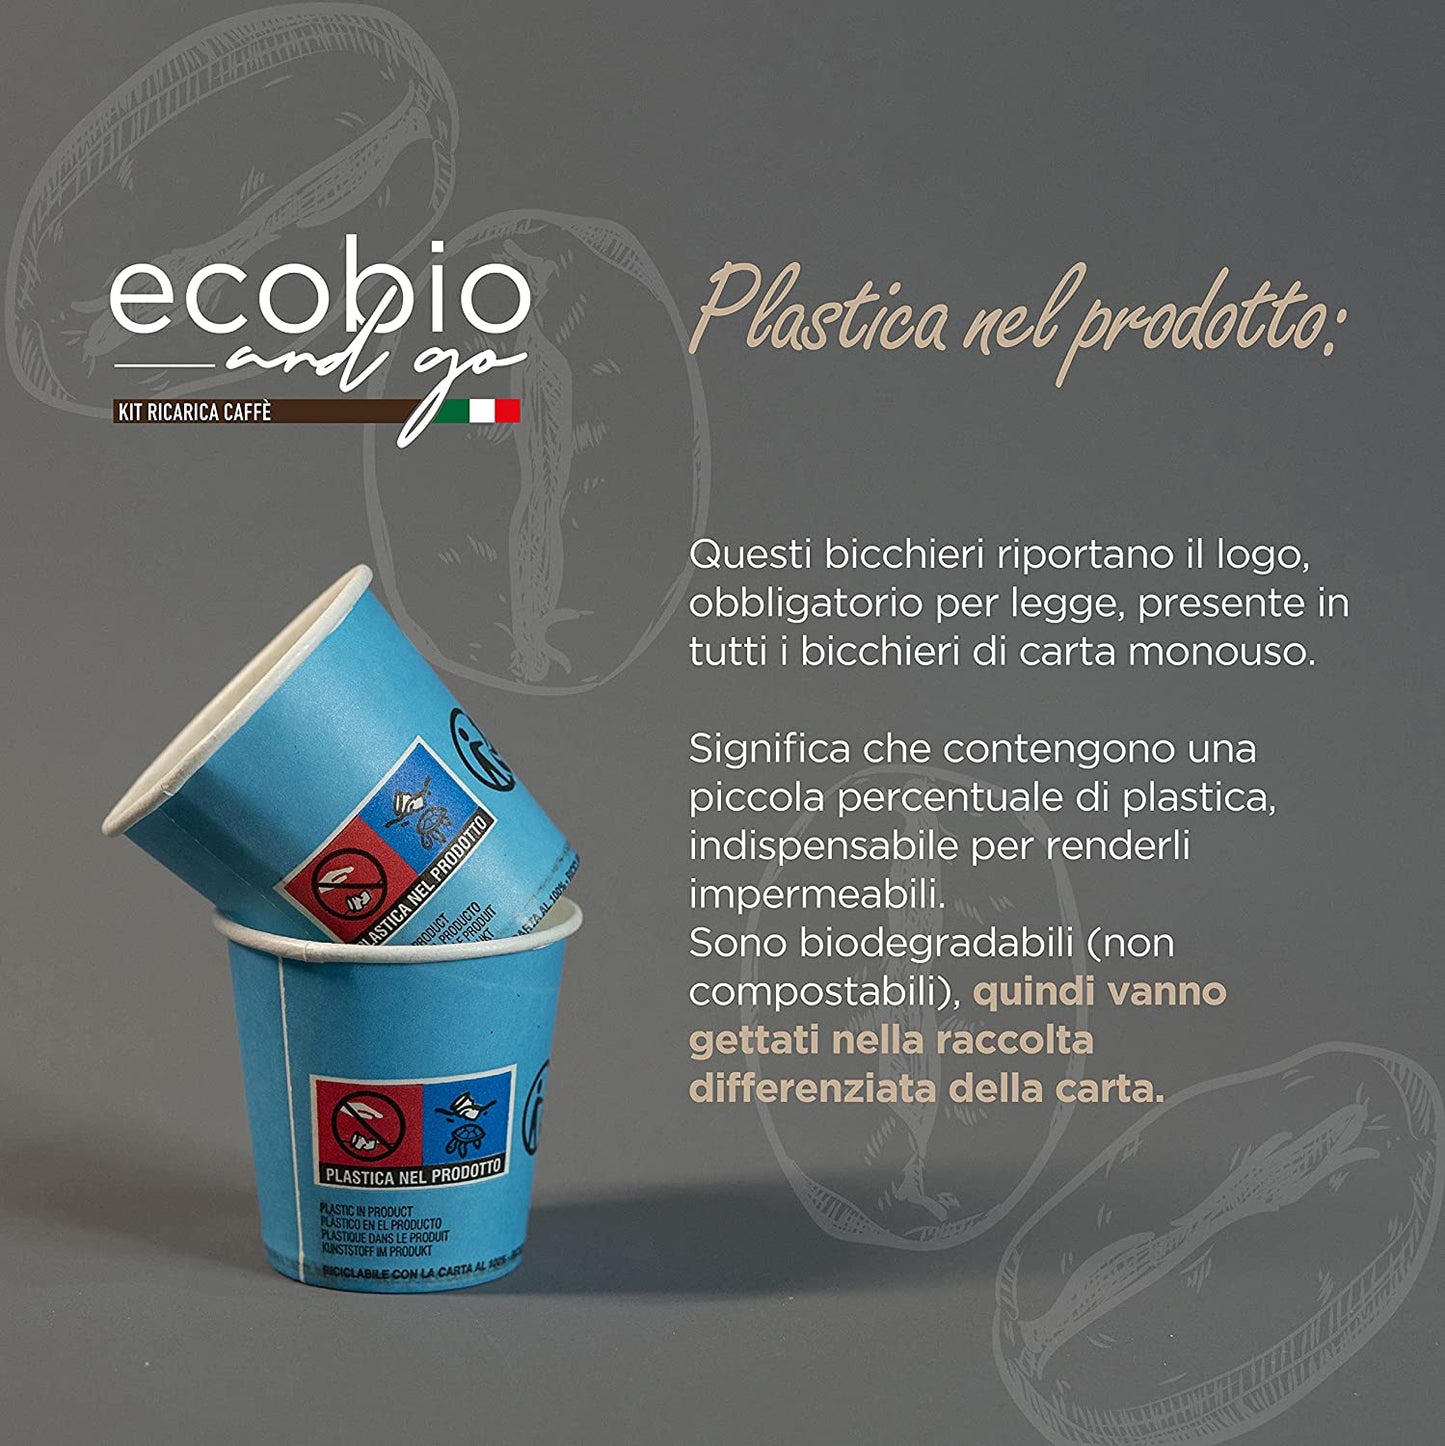 Ecobio and Go Kit Bicchierini Caffè e Palettine 150 pcs